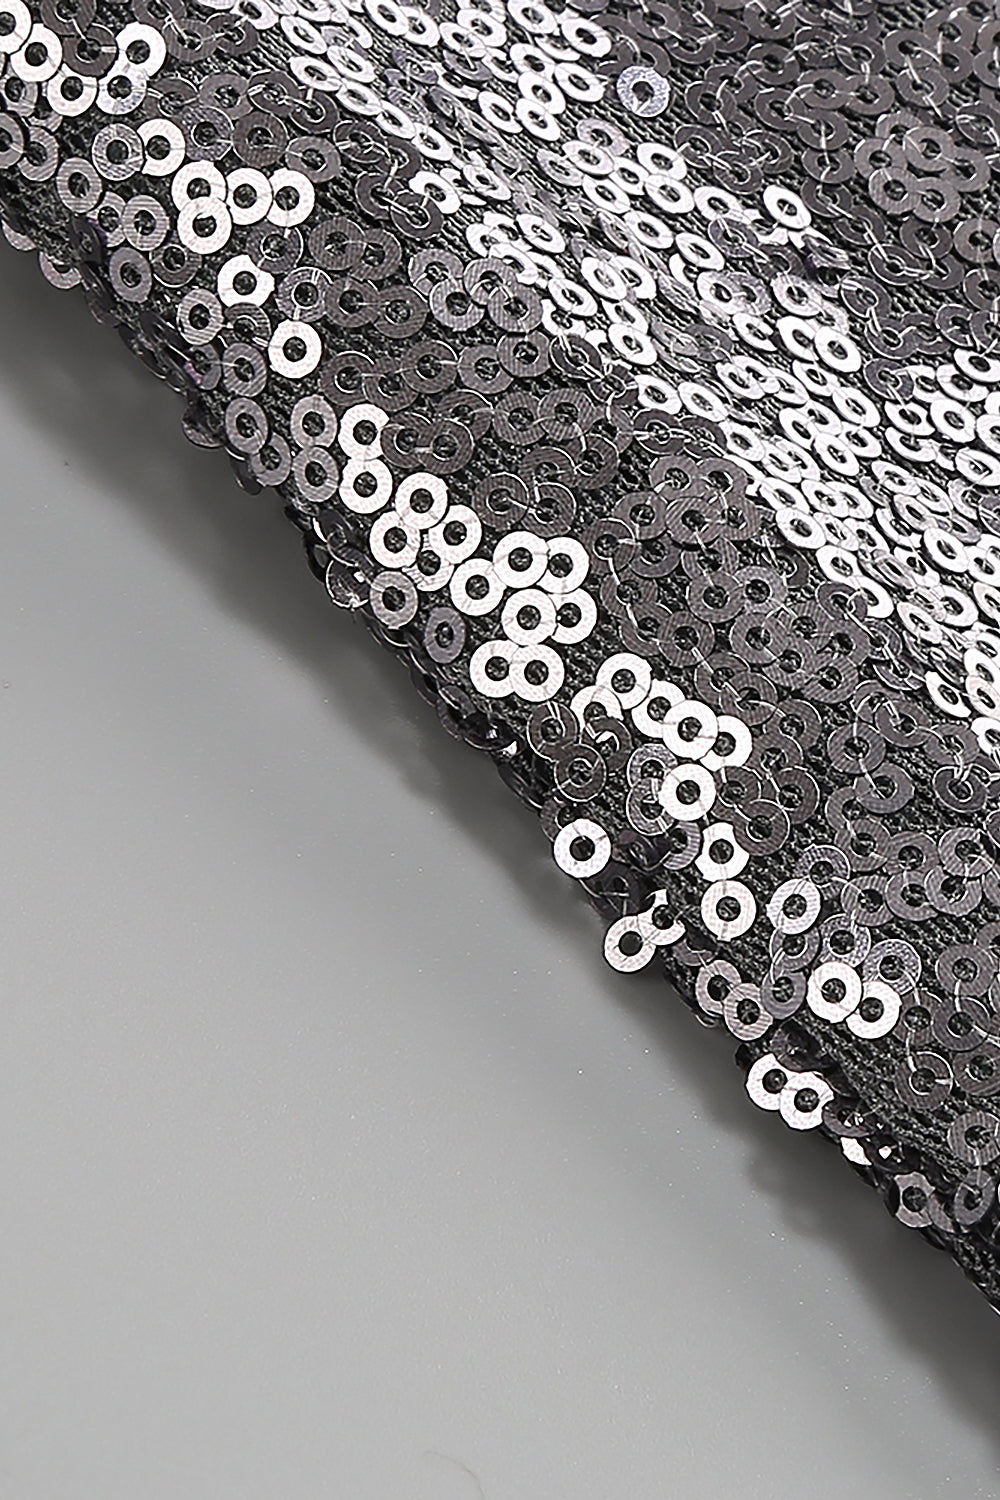 Silver Halter Sleeveless Sequined Folds Split Maxi Dress